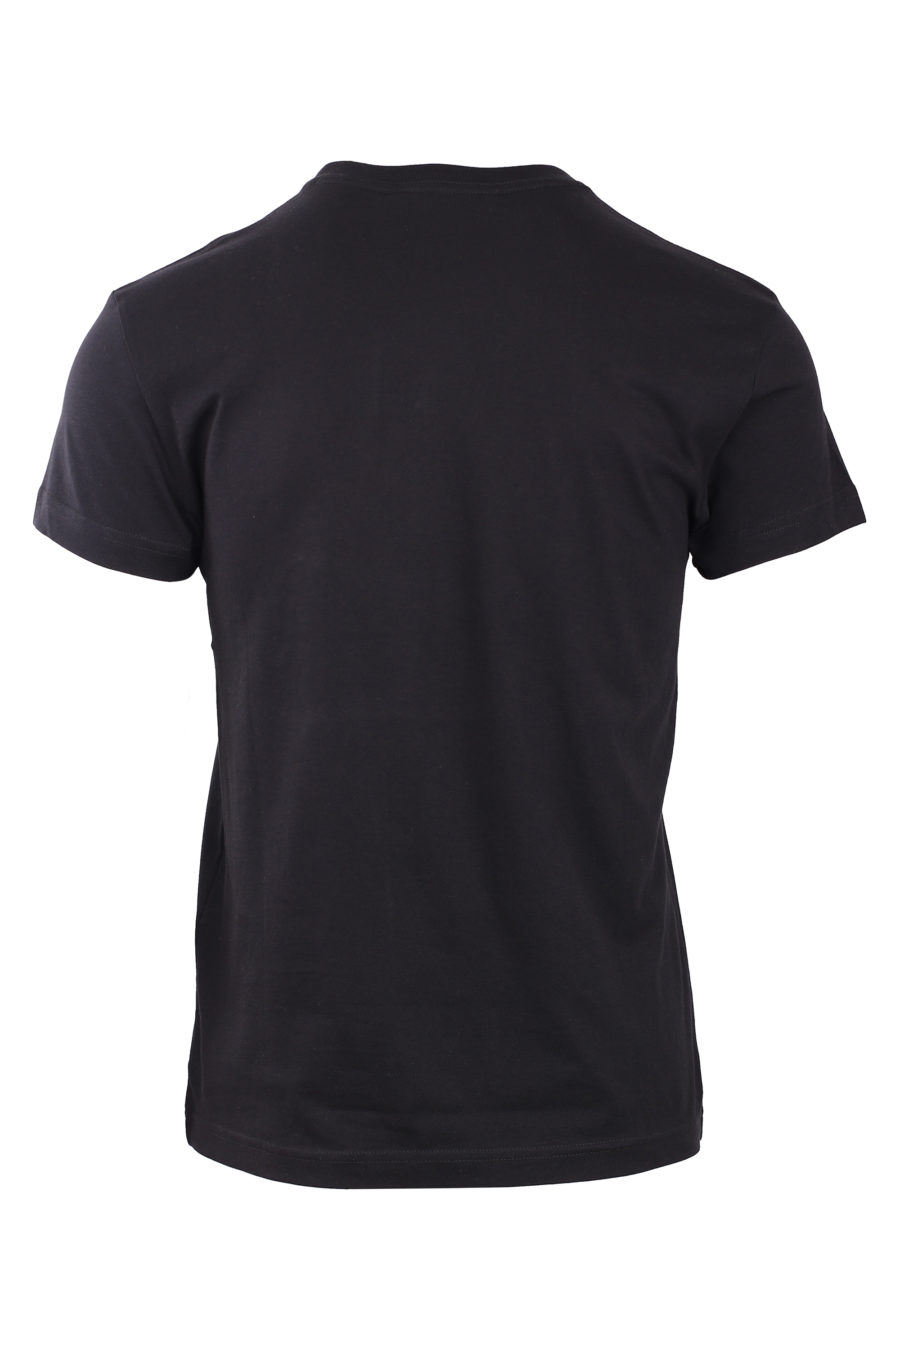 Black t-shirt with round iridescent logo - IMG 0776